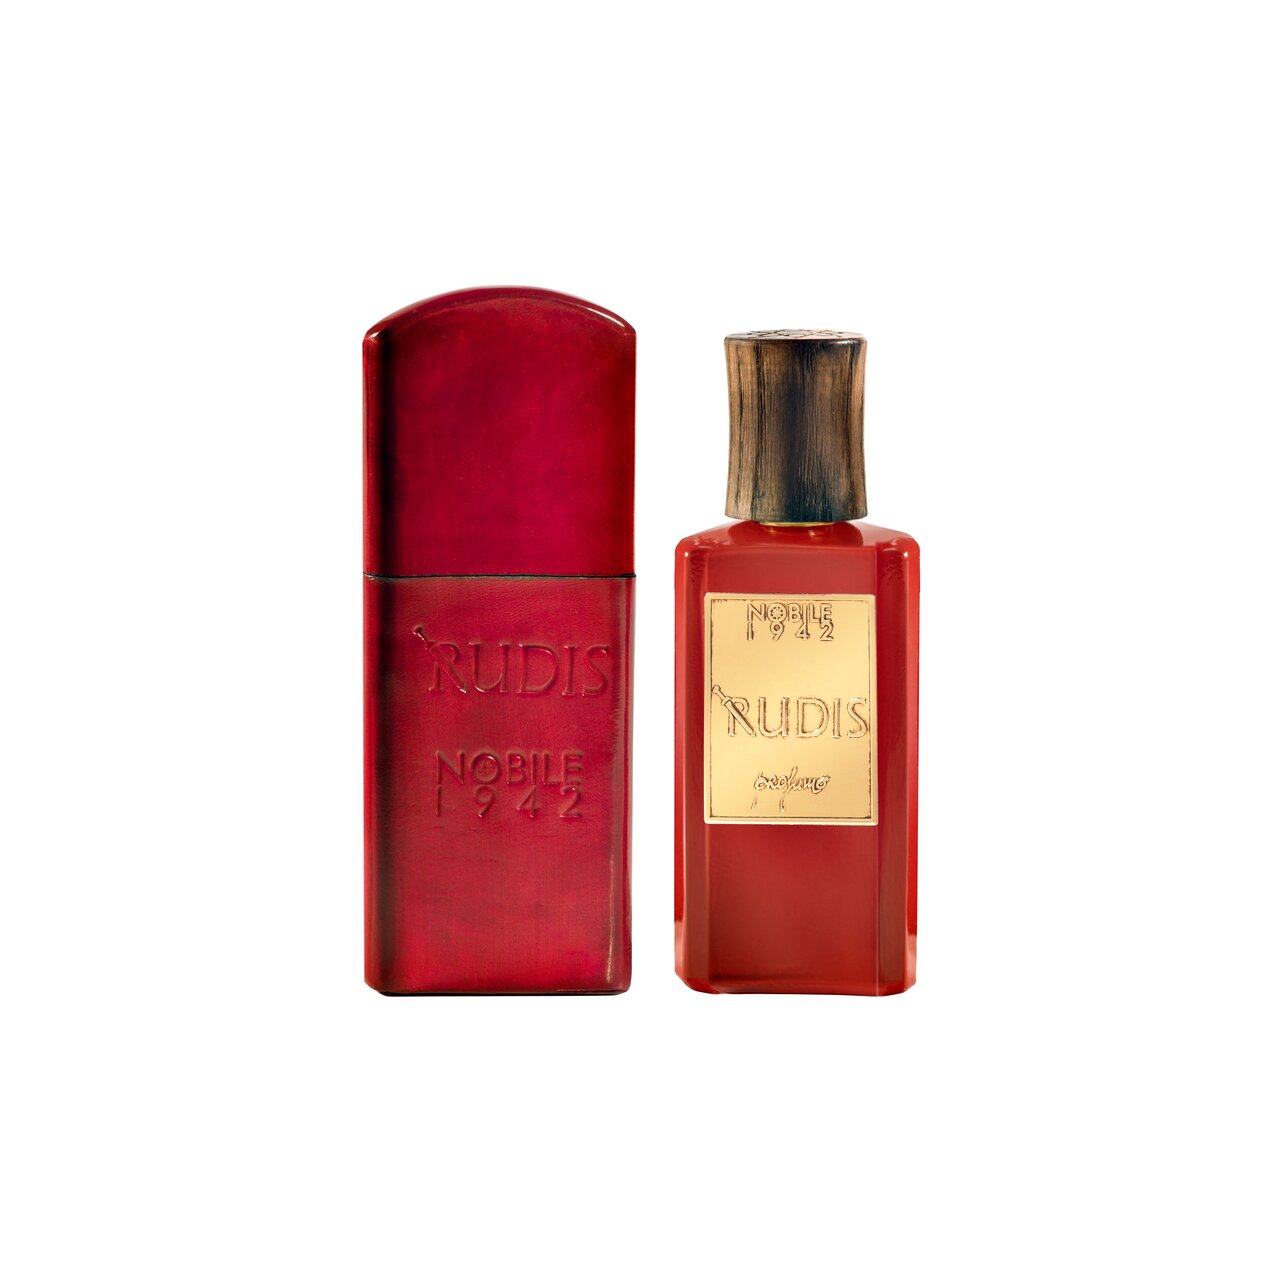 Nobile 1942 - Premium Fragrances